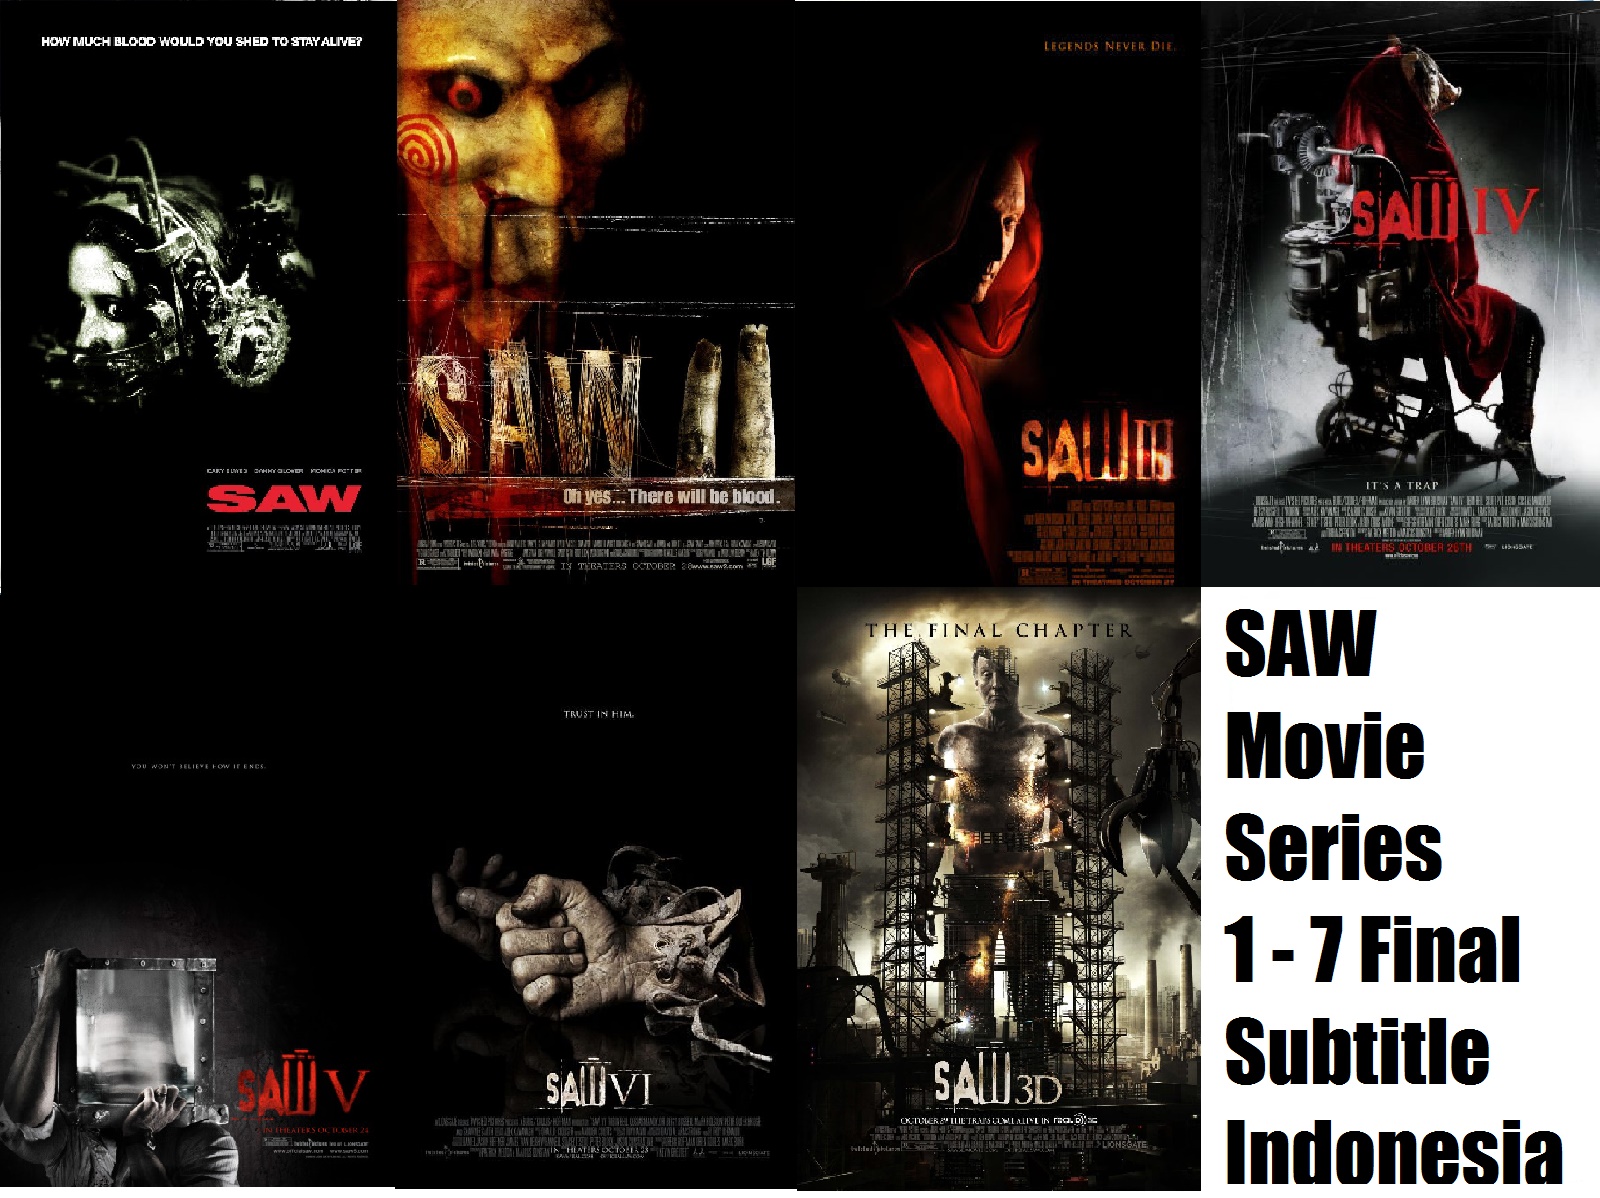 Download movie subtitle indonesia